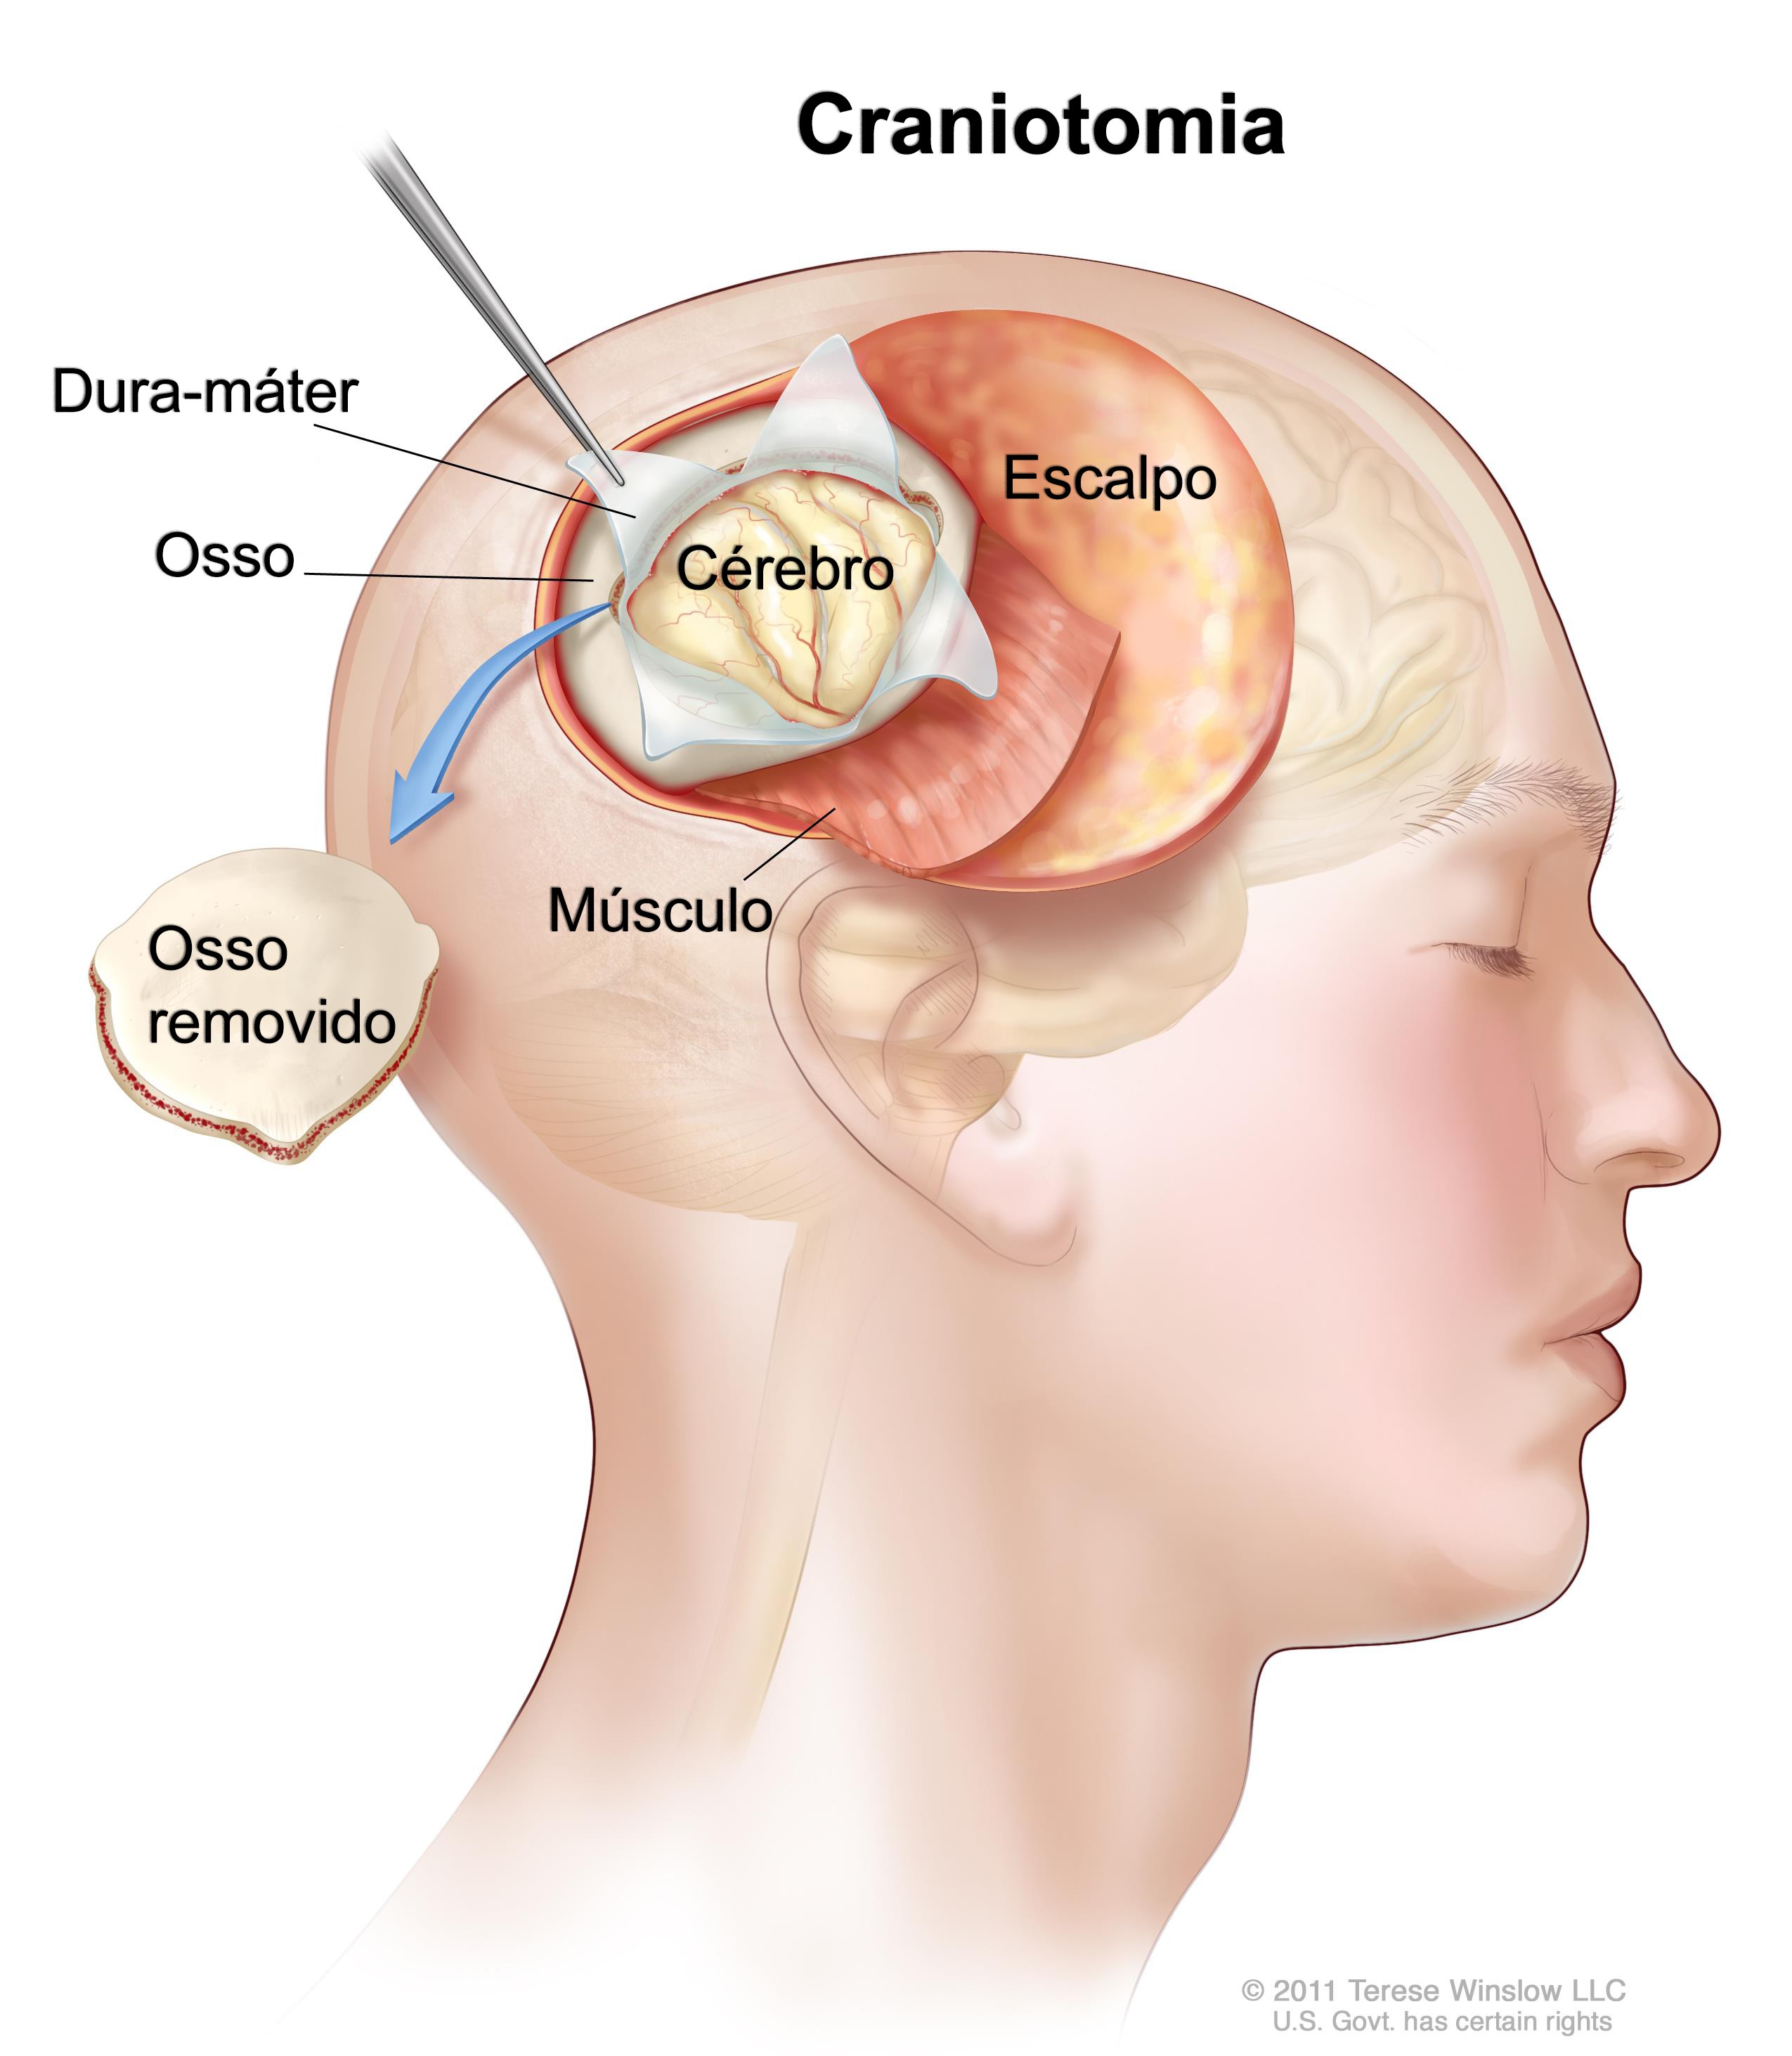 Craniotomia